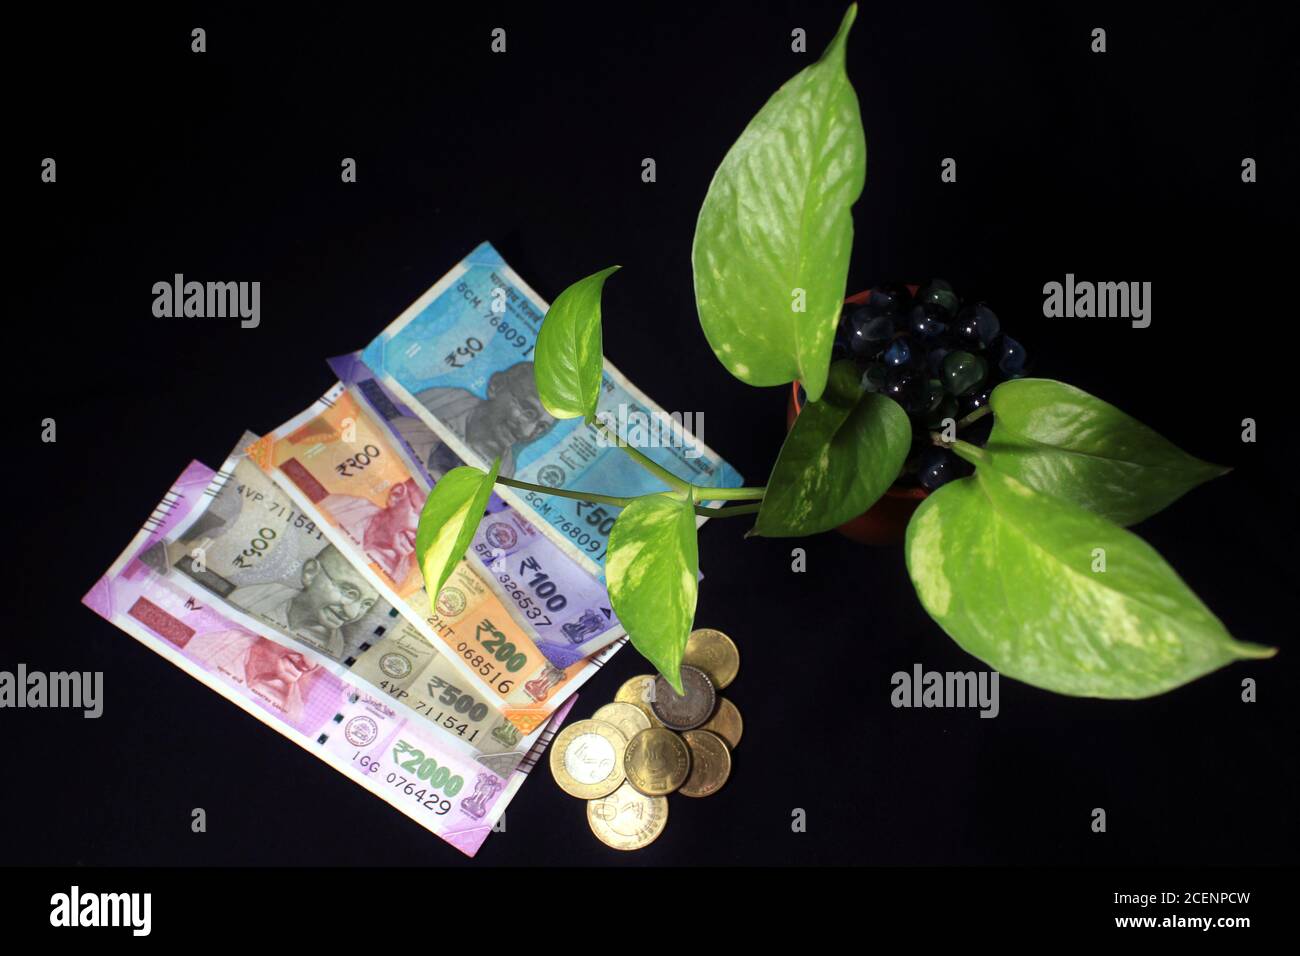 L'ivie du diable (Epipremnum aureum) ou feuille de plante de monnaie avec 50, 100, 200, 500, 2000 roupie note de monnaie sur fond noir. Billet de banque avec plante en croissance Banque D'Images